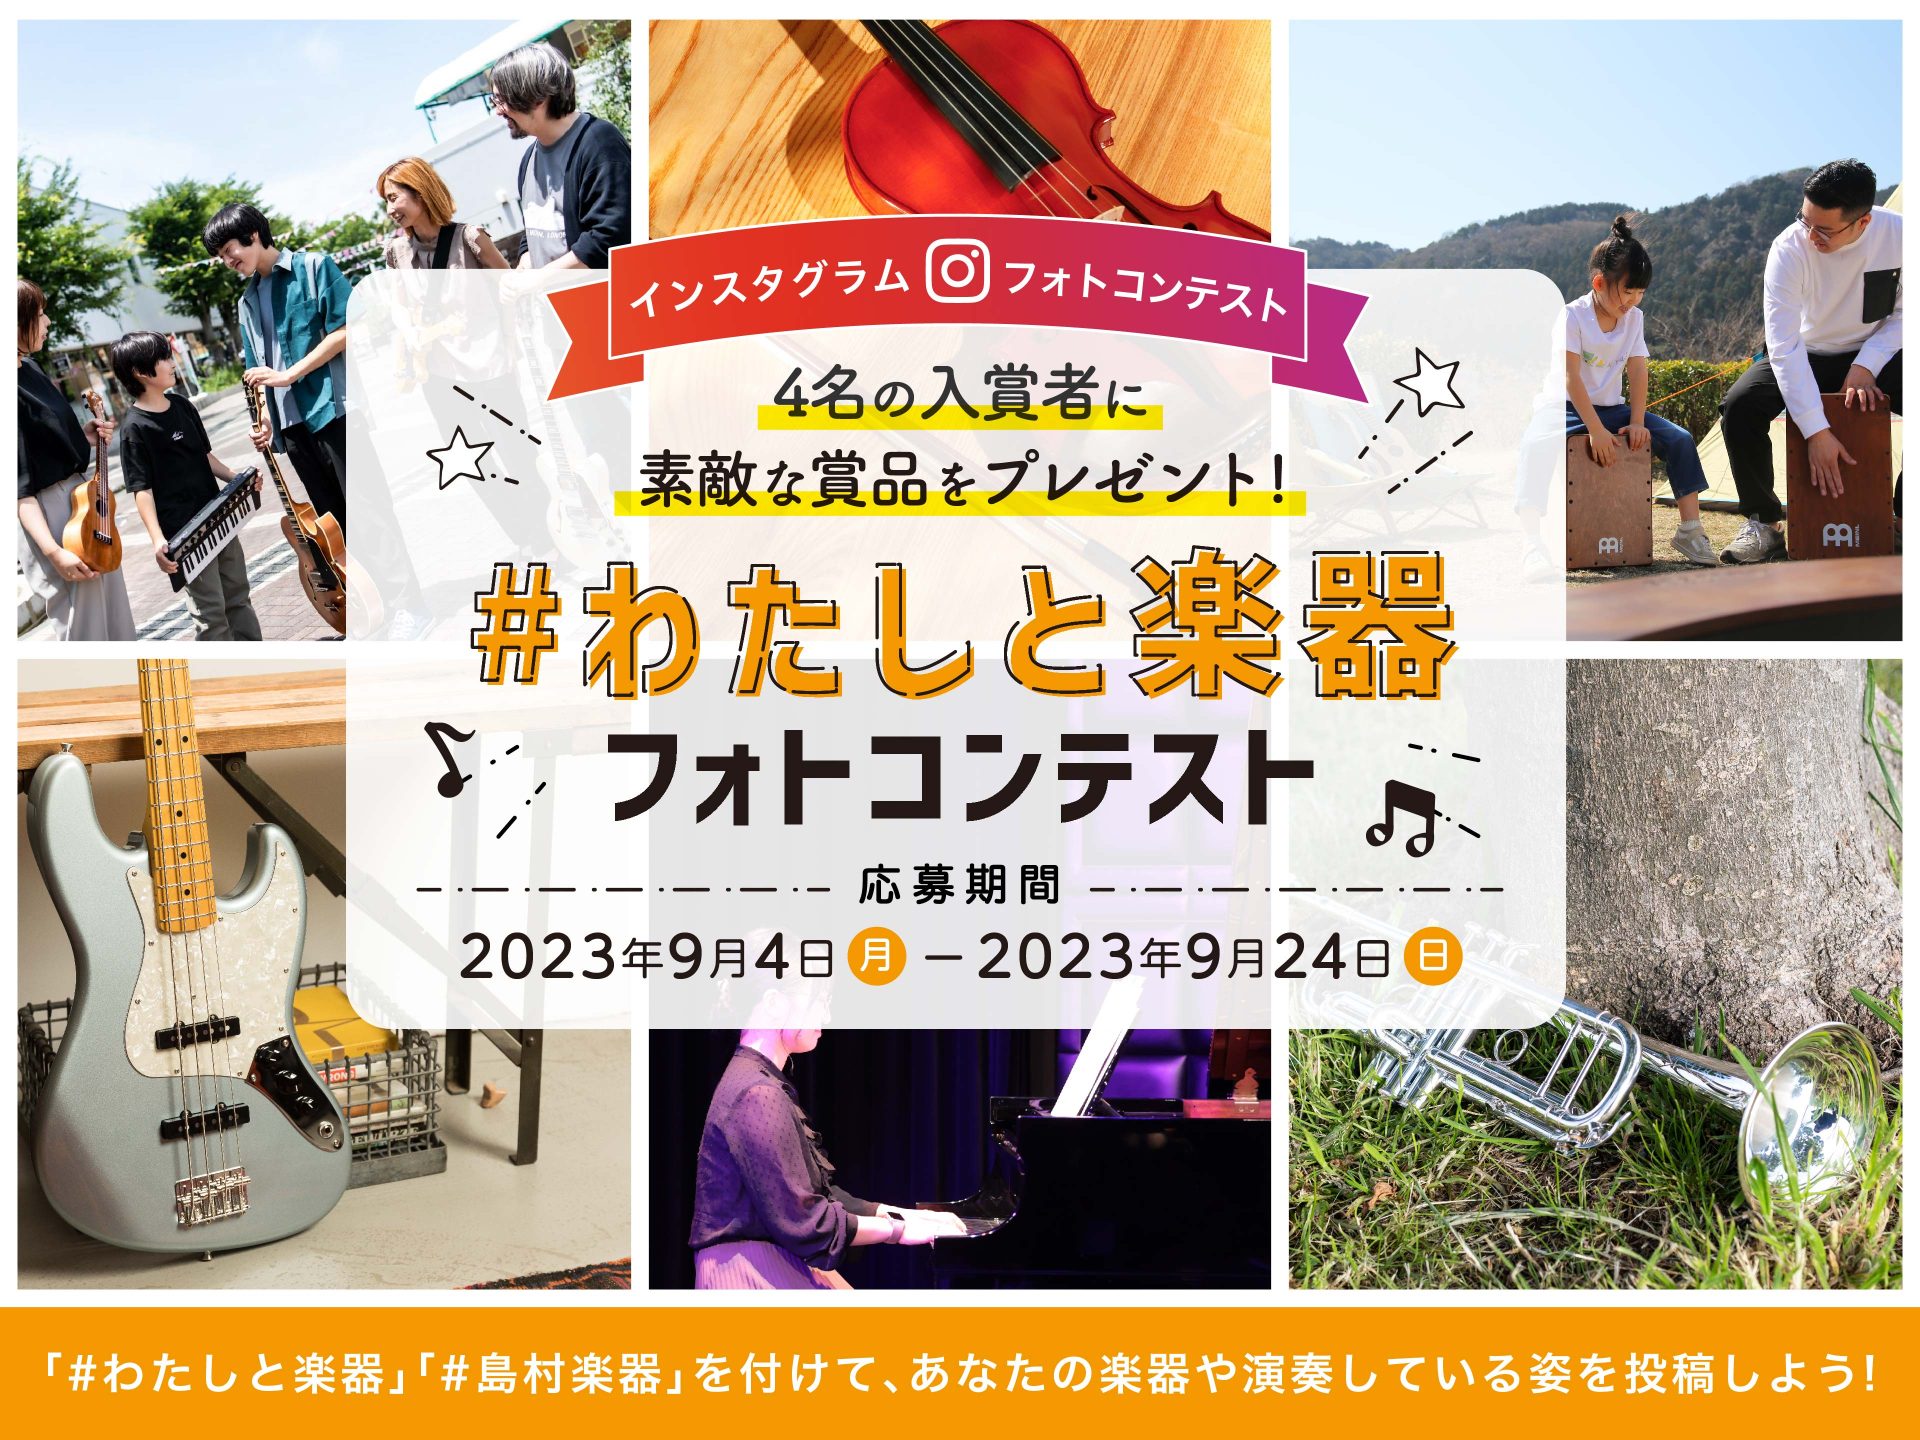 　島村楽器株式会社（本社：東京都江戸川区、代表取締役社長：廣瀬 利明、以下 島村楽器）は、9月4日（月）から9月24日（日）まで、『#わたしと楽器』フォトコンテストを開催いたします……